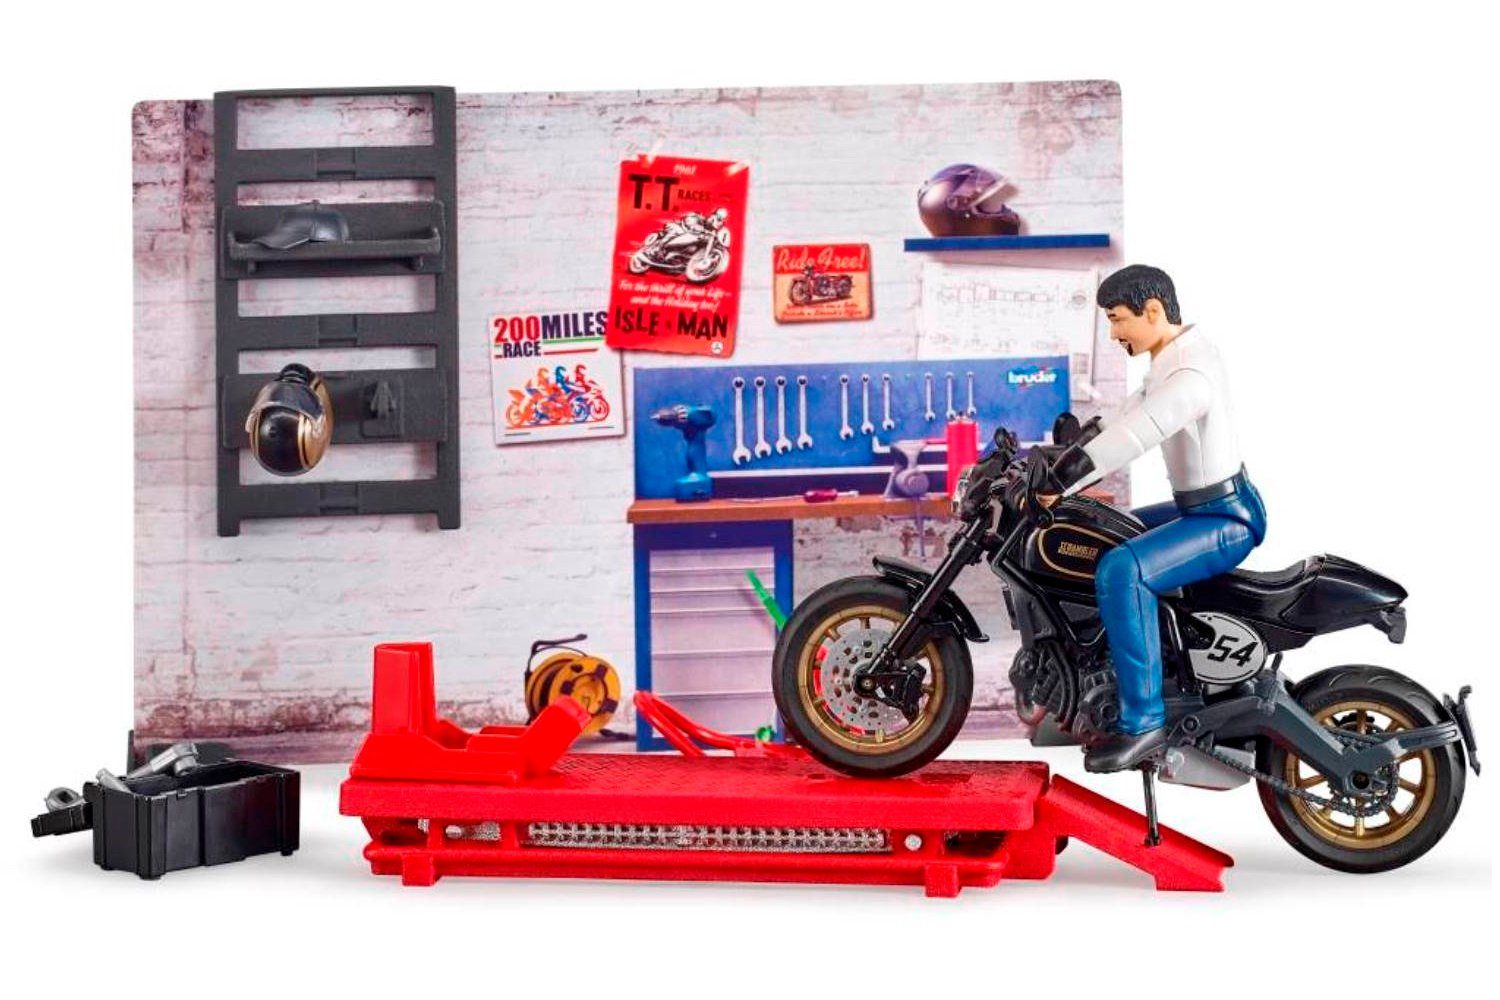 Hebebühne, Cafe mit Motorrad, Stellfüße detailgetreue Spielzeug-LKW 62101 bworld Scrambler Motorrad-Werkstatt Racer, Bruder® Ducati